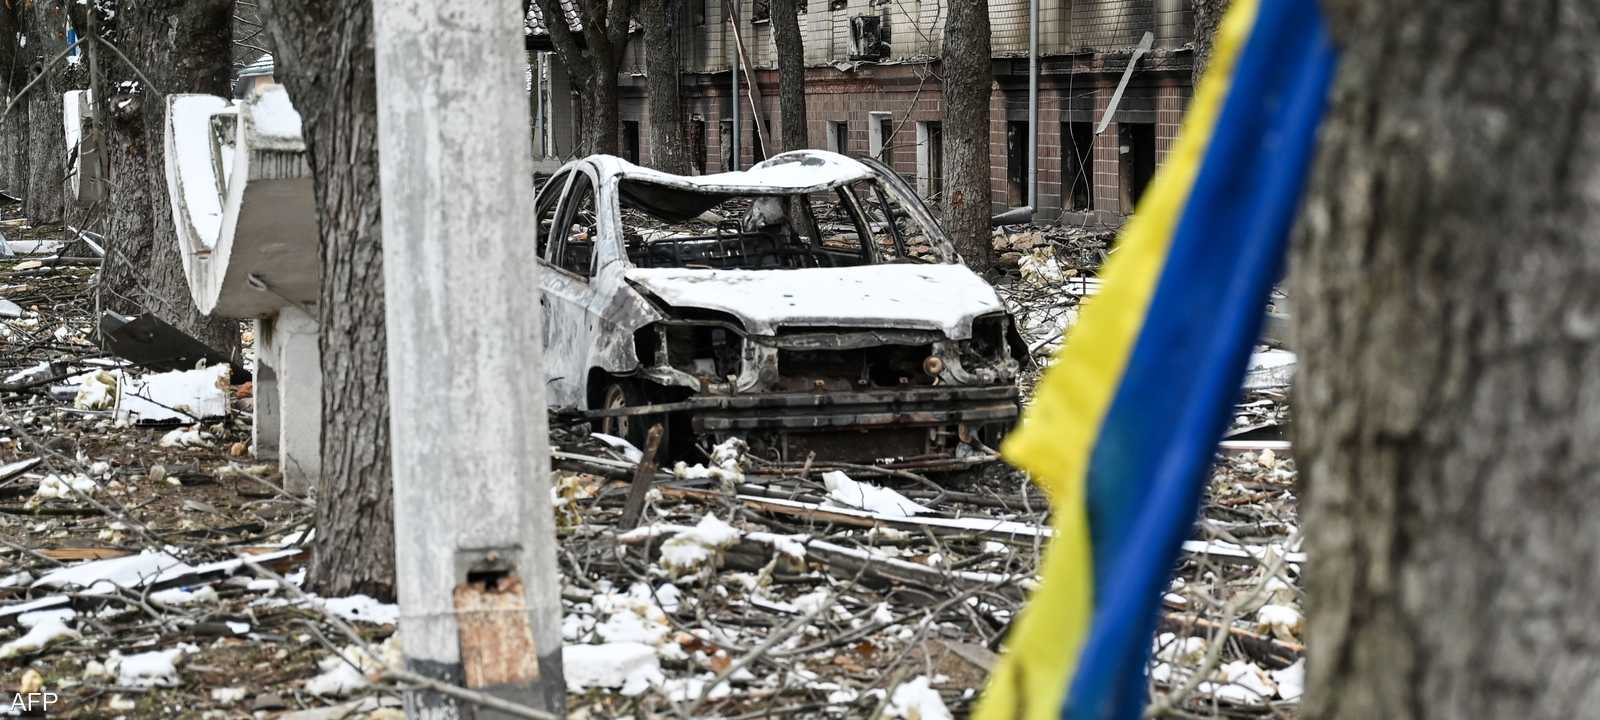 أوكرانيا تعاني من تداعيات الحرب مع روسيا